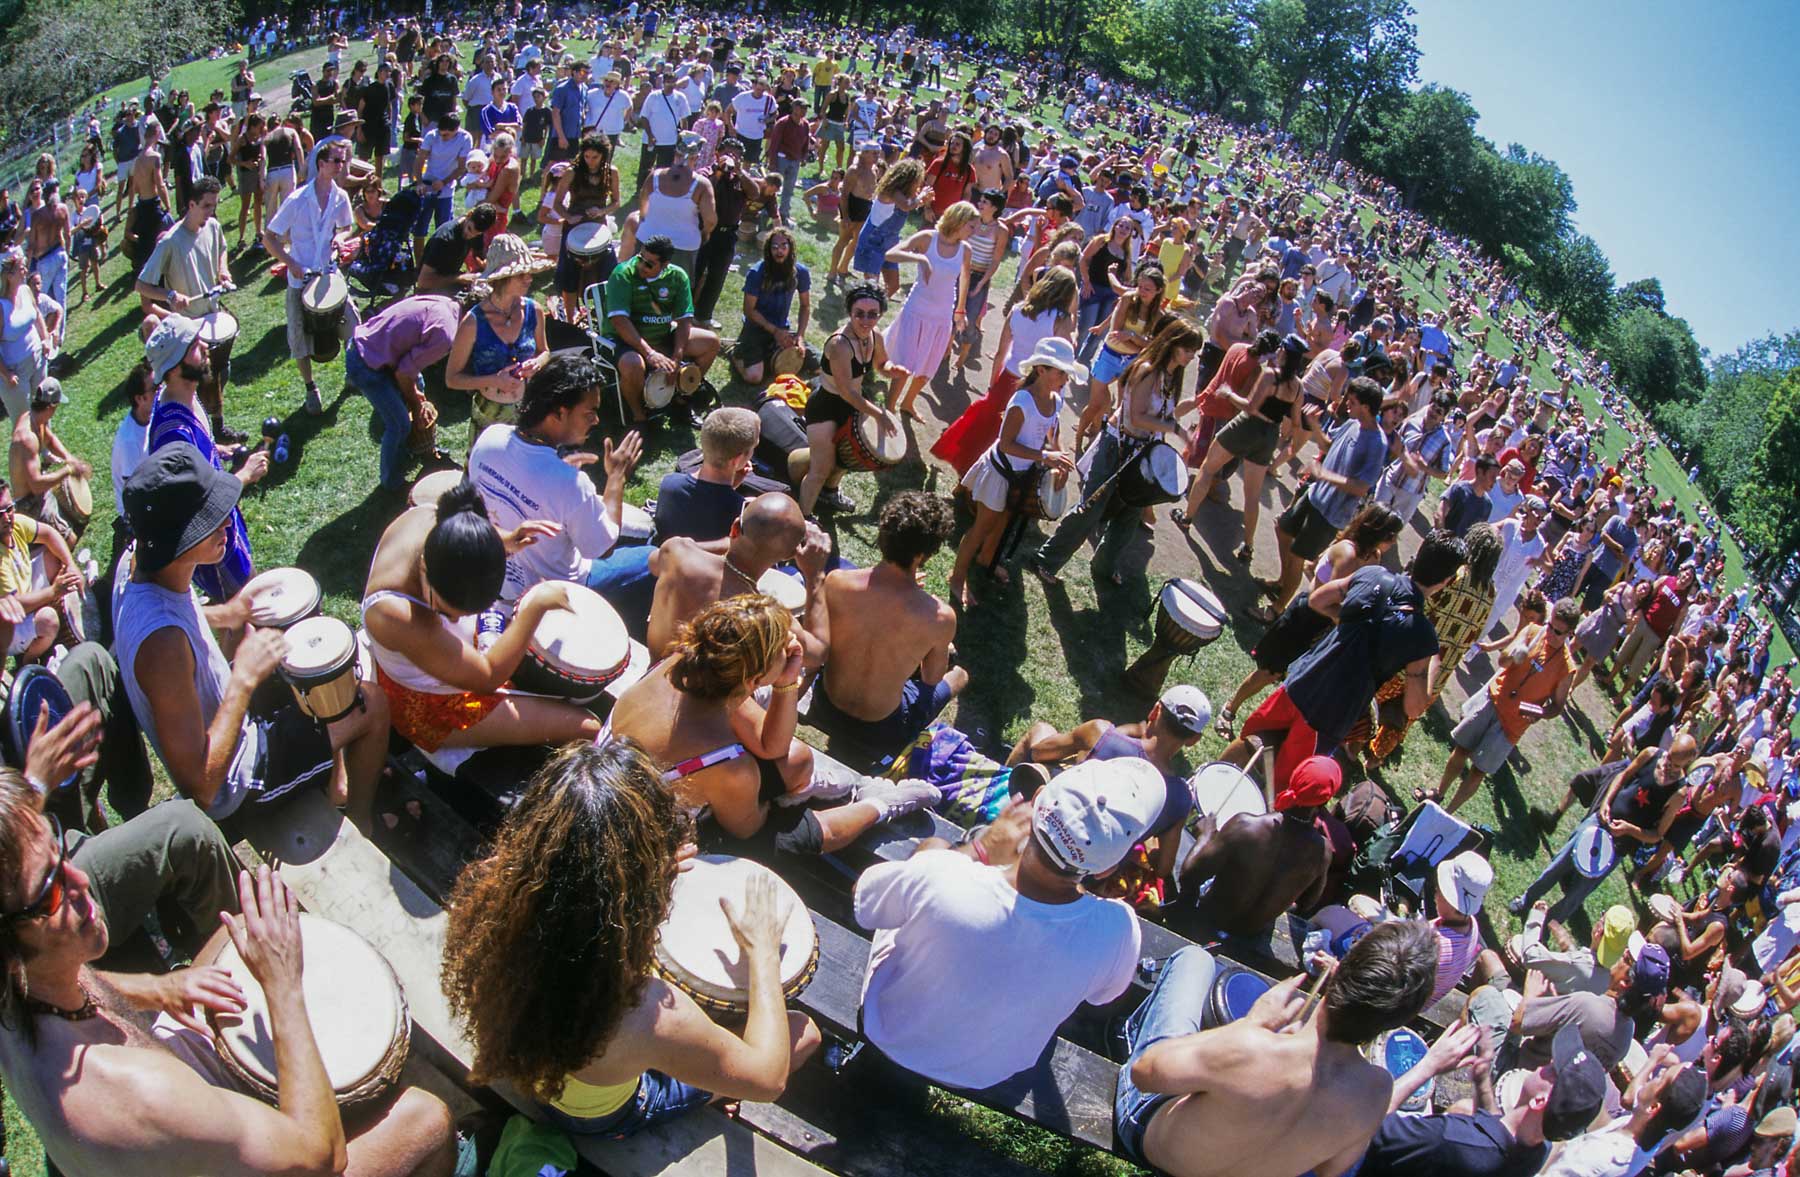 Rassemblement de plusieurs centaines de personnes jouant du tam-tam dans un parc verdoyant.